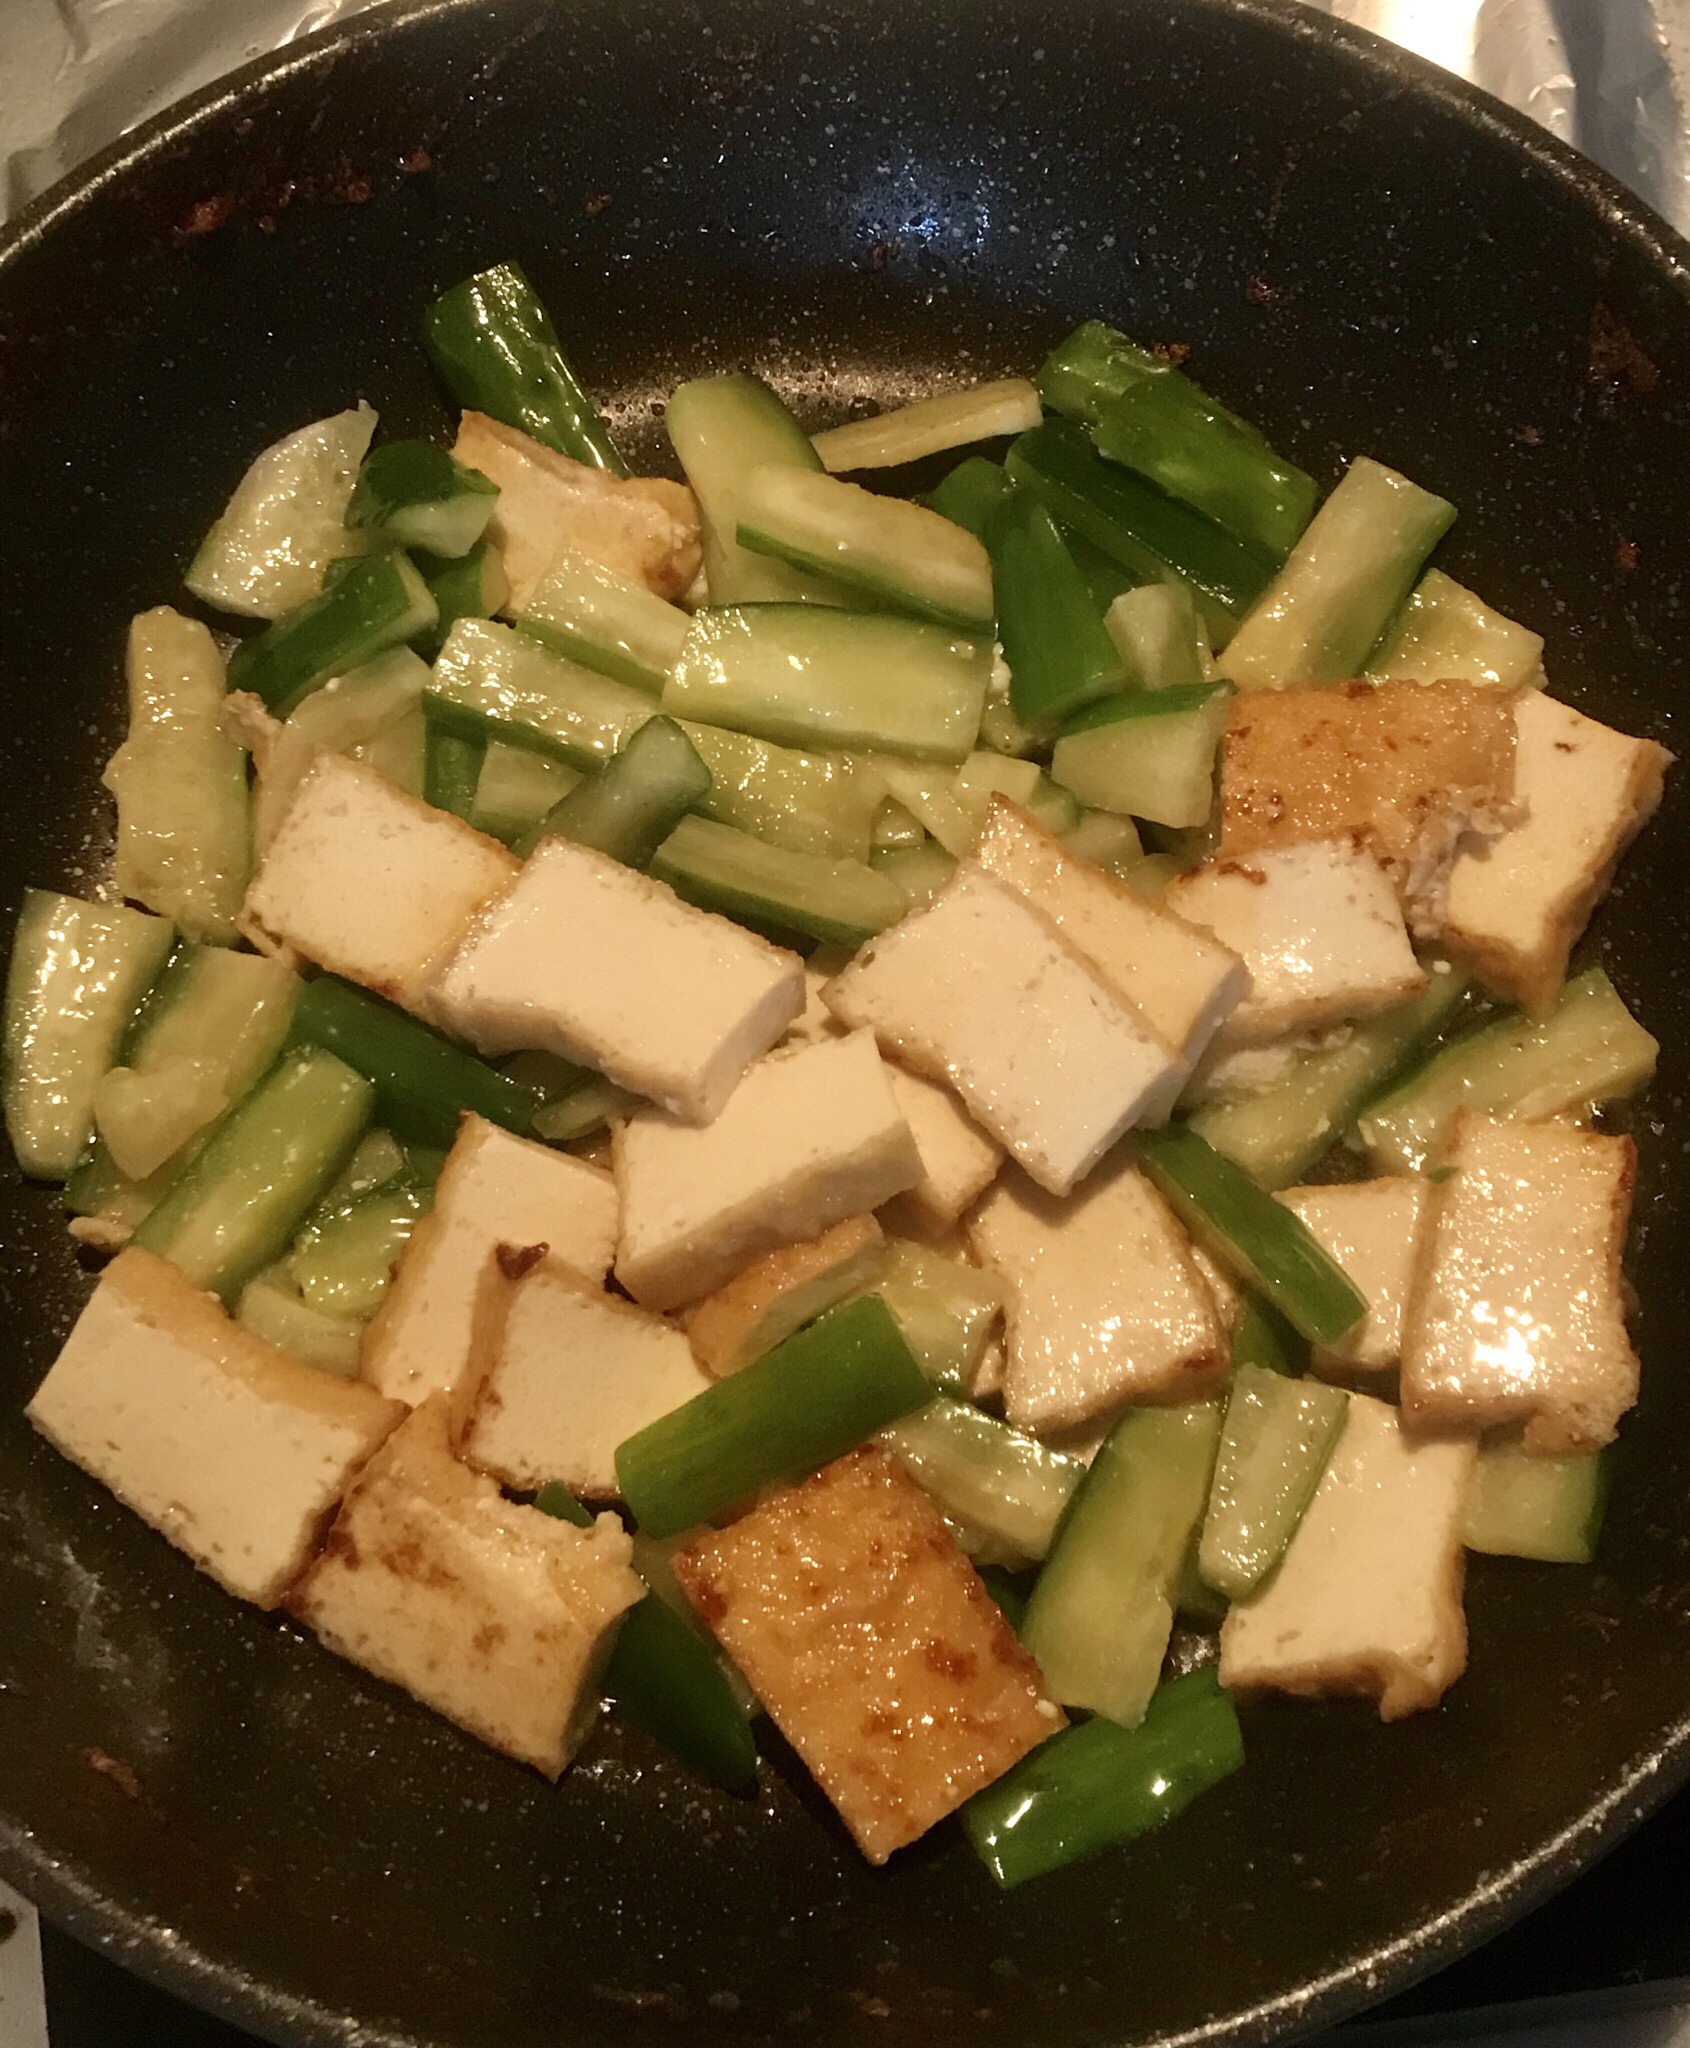 步骤图 琉球料理之野菜炒豆腐的做法 琉球料理之野菜炒豆腐的做法步骤 日式 下厨房